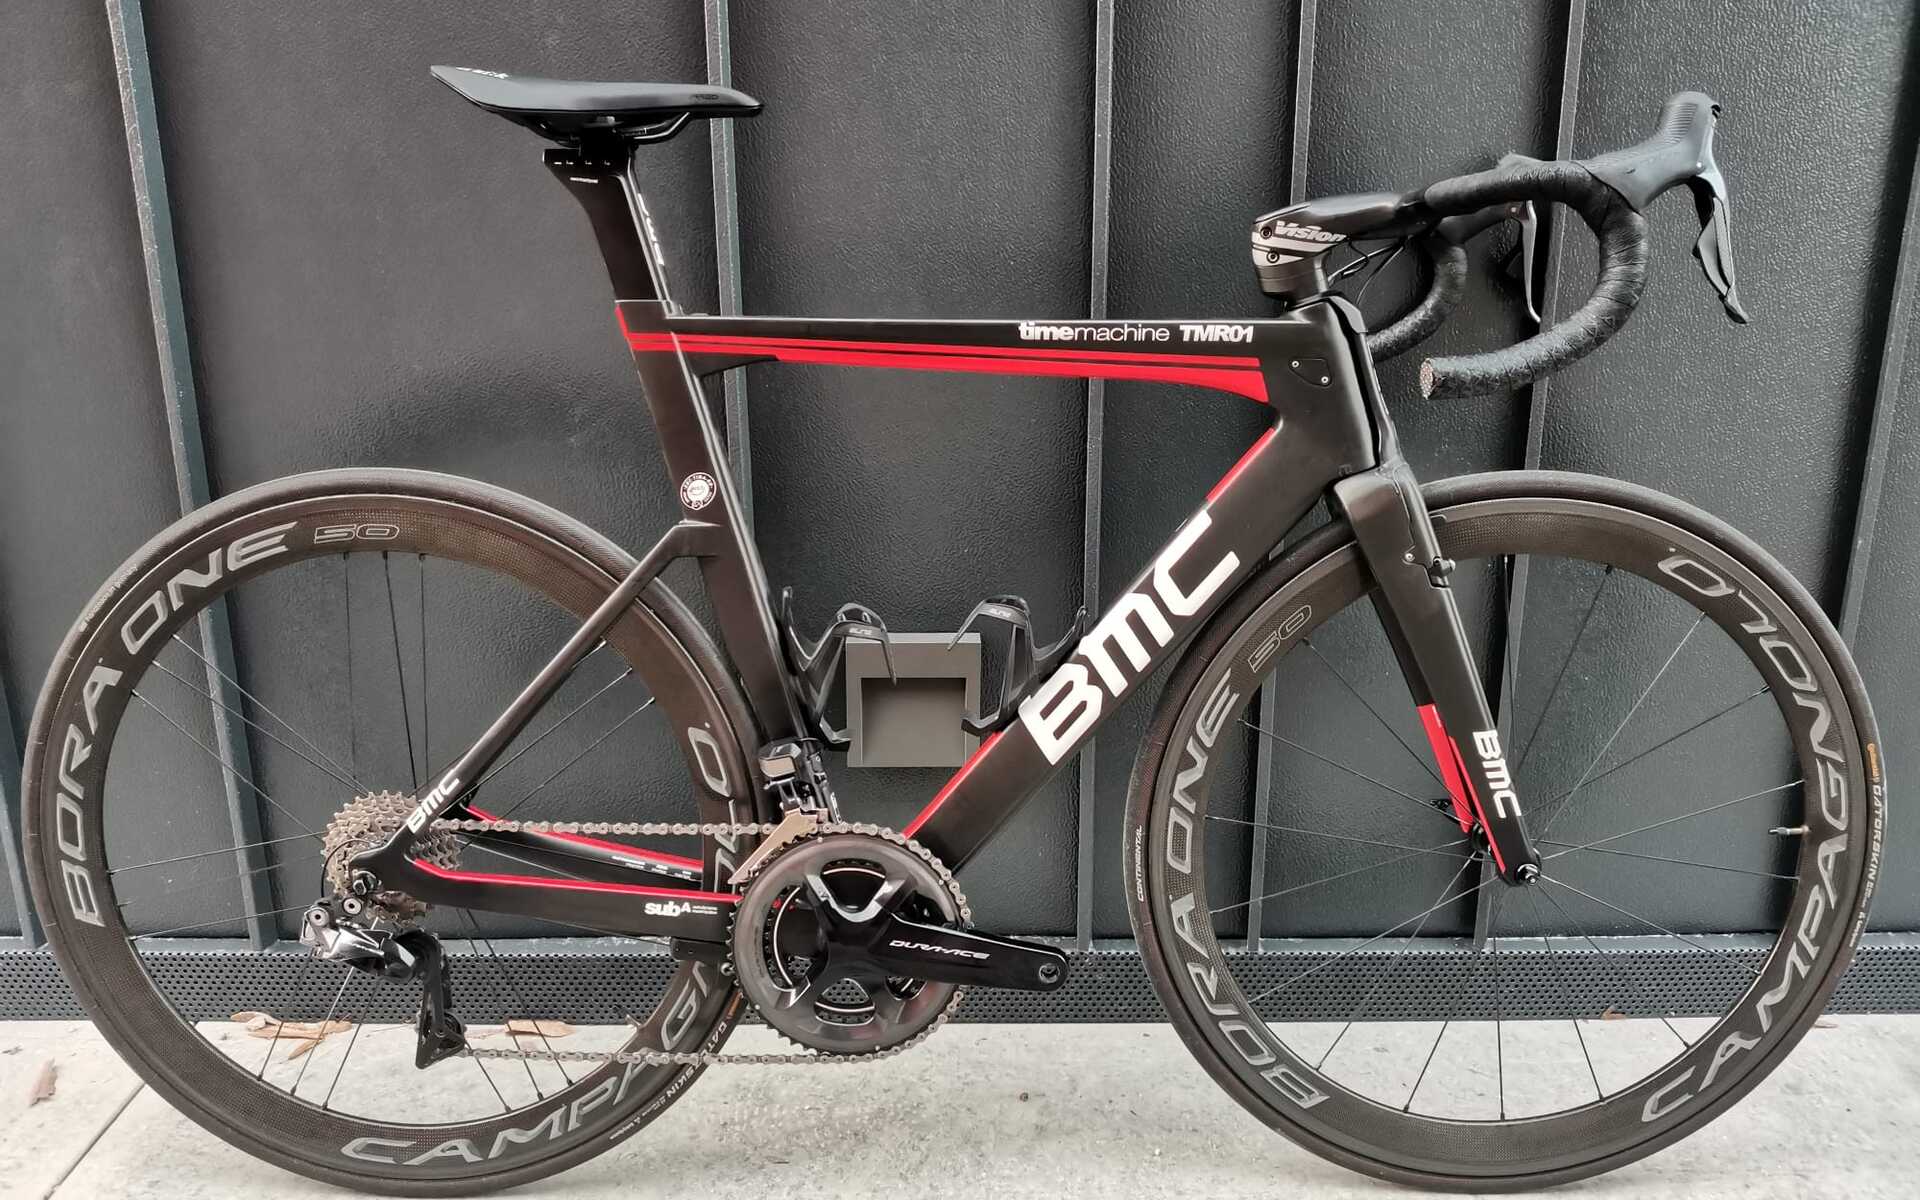 Bici da corsa BMC Timemachine TMR01, Usata, 2018, Treviso